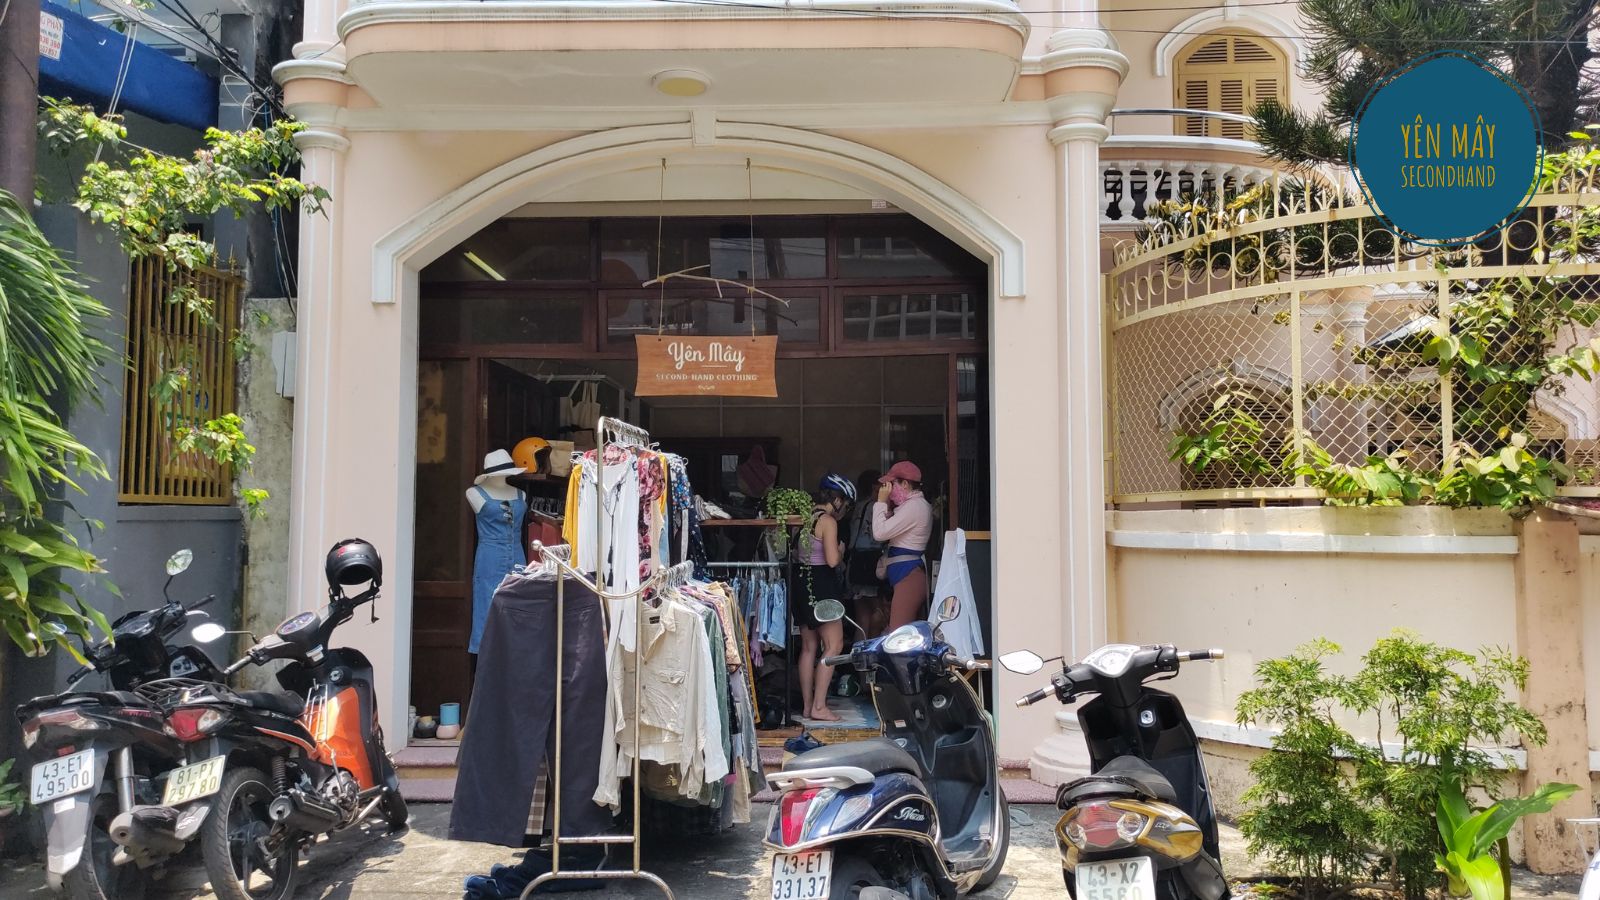 Yên Mây 2hand - Shop bán 2hand cực hot ở Đà Nẵng